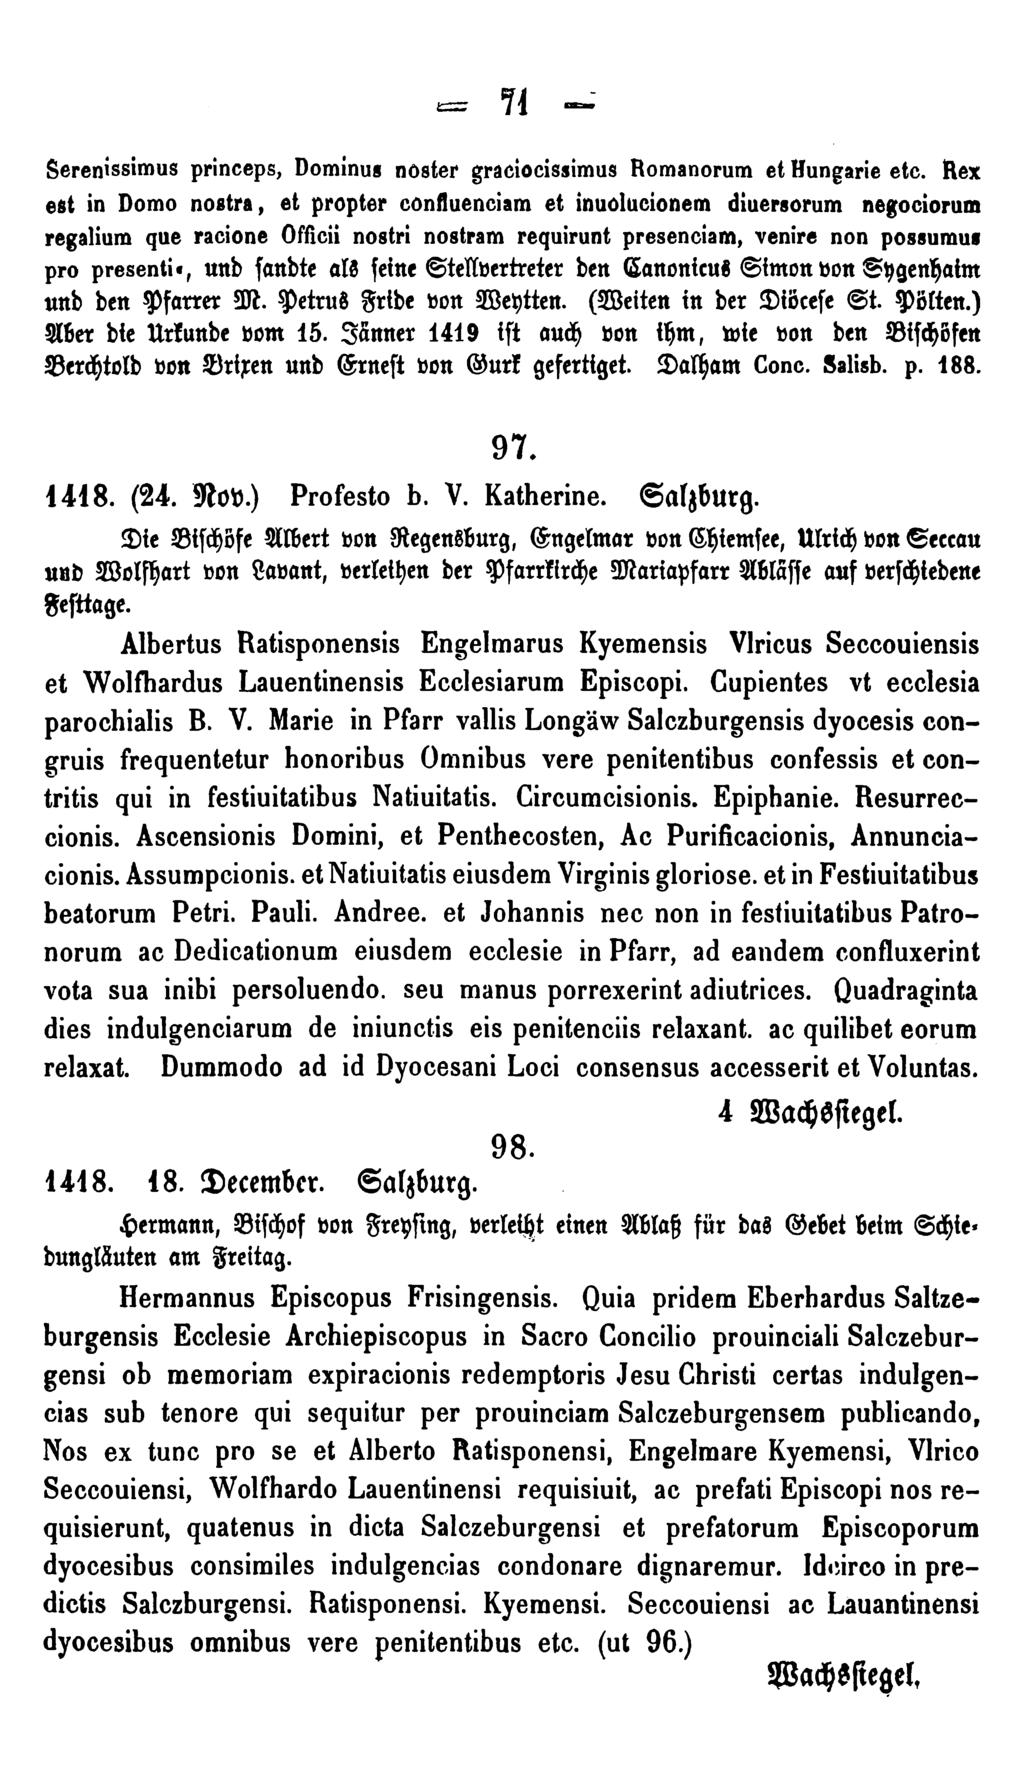 71 - Serenissimus princeps, Dominus nöster graciocissimus Romanorum et Rungarie etc.